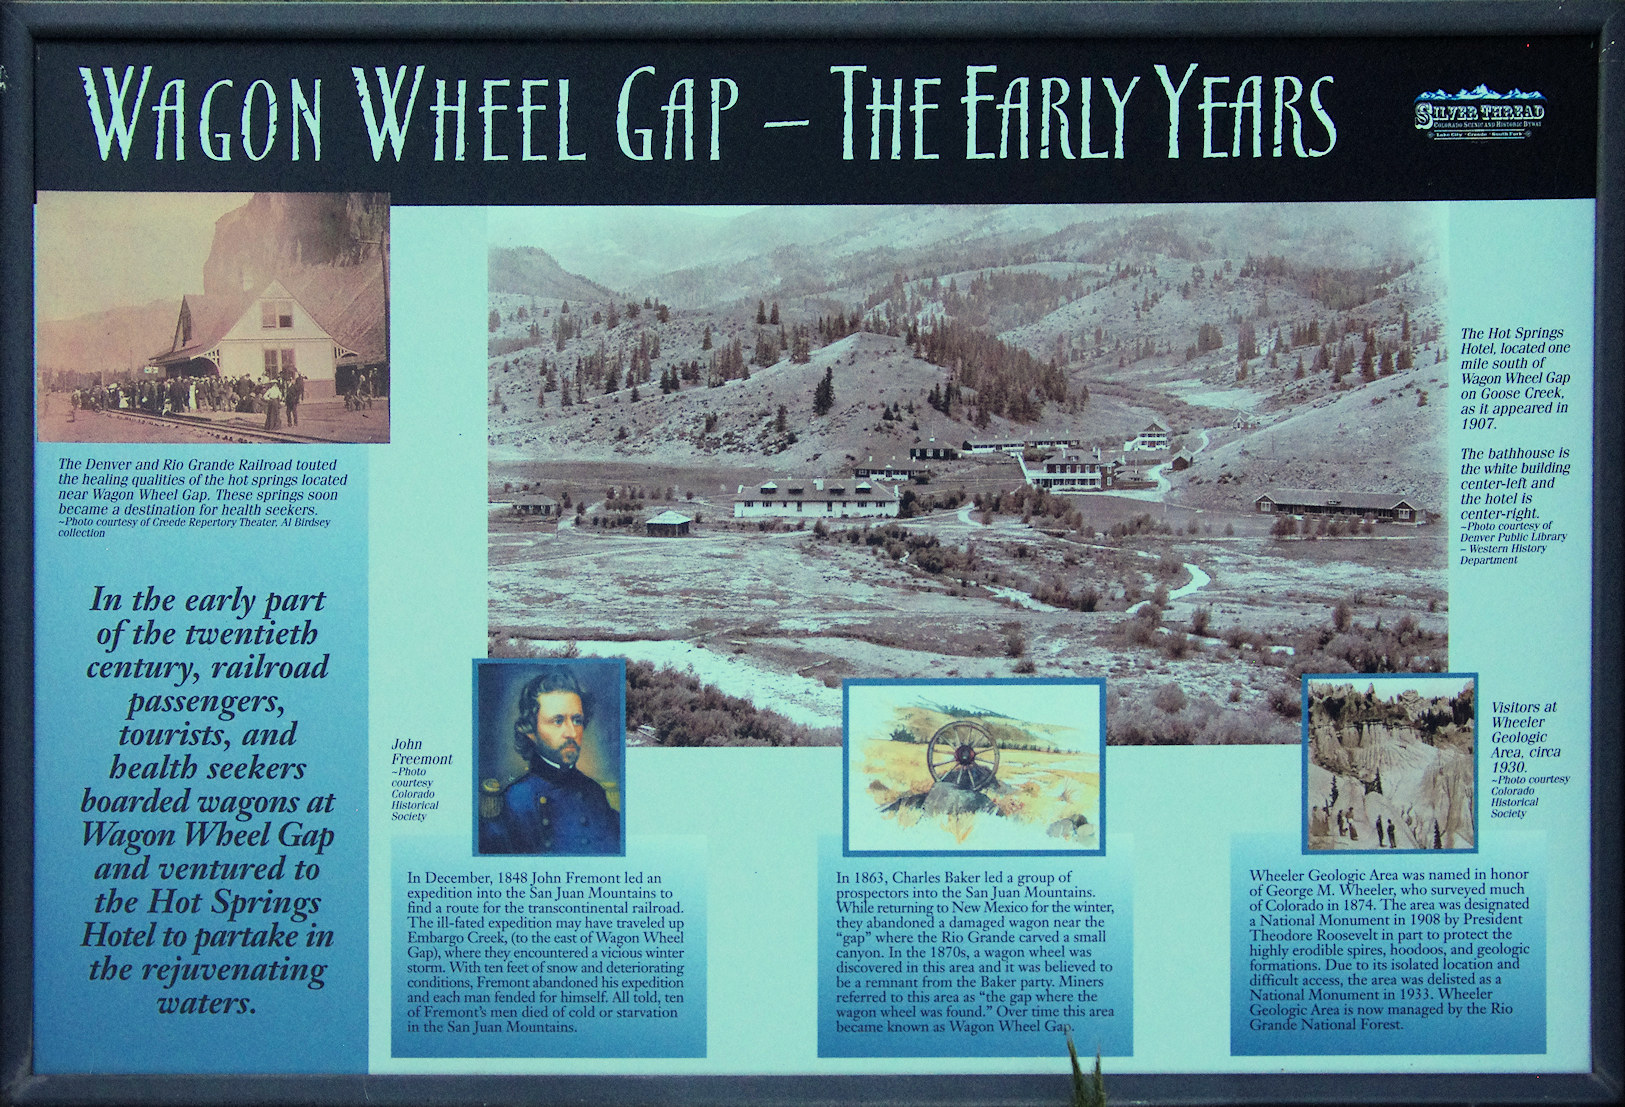 Colorado, Mineral County, Wagon Wheel Gap